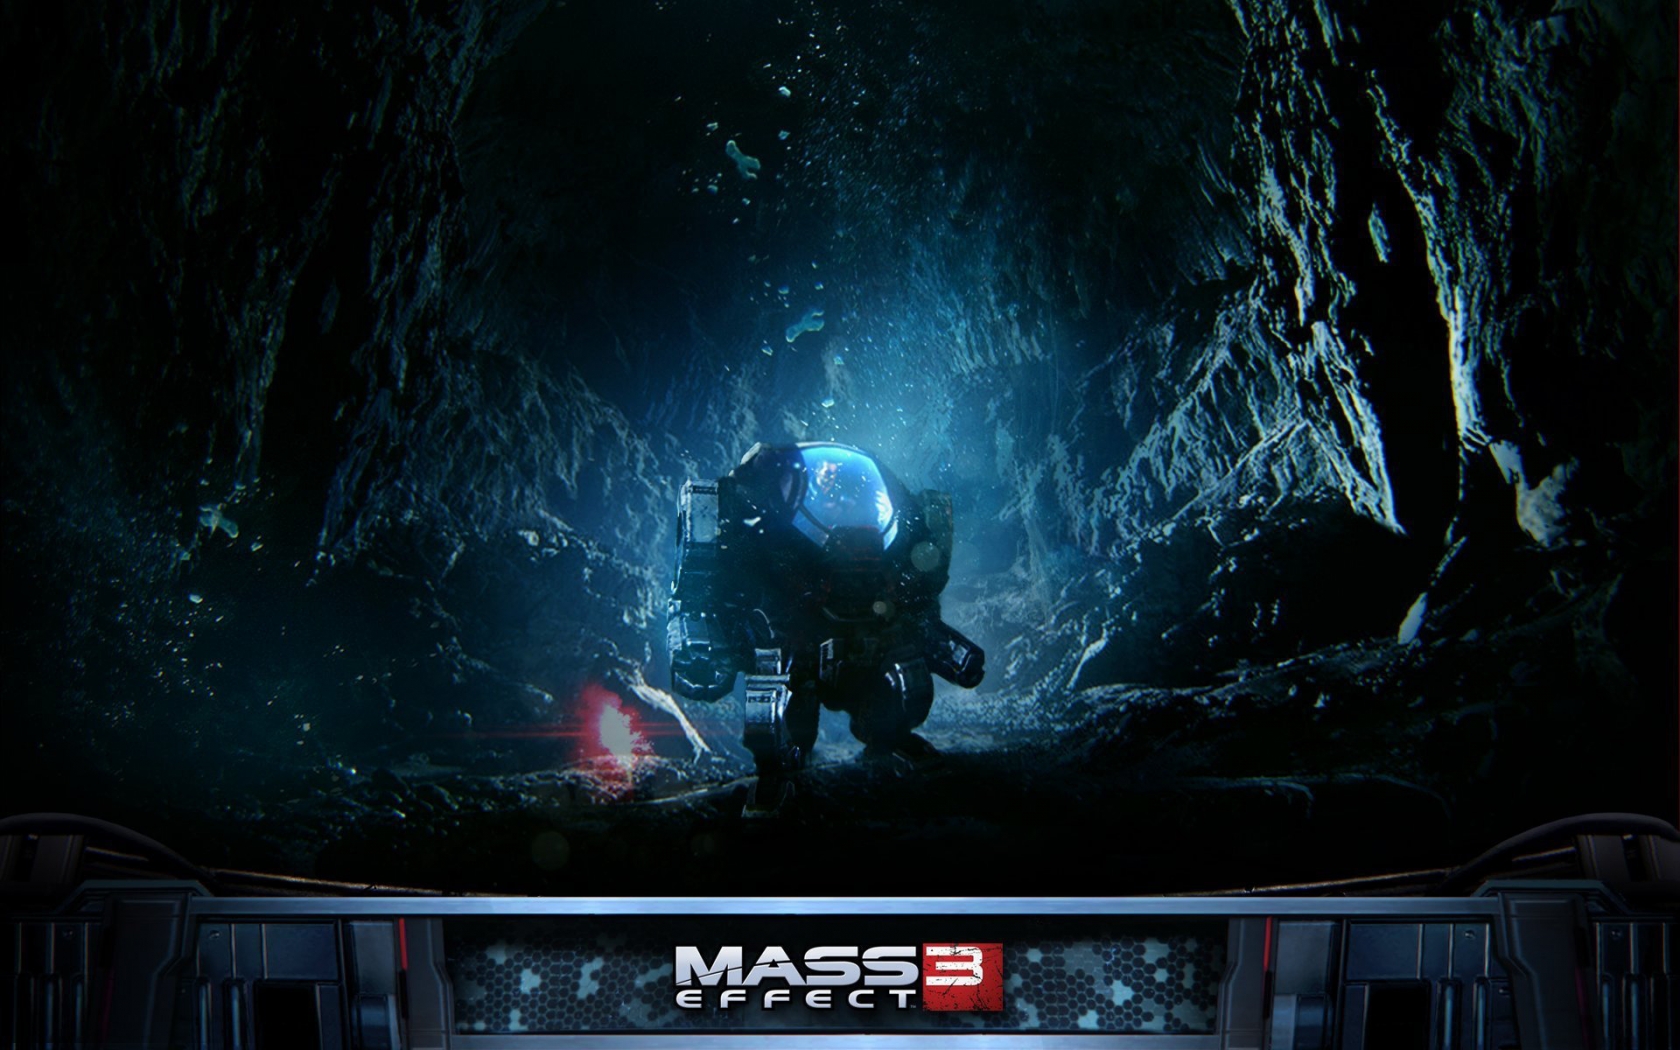 Mass Effect 3 Robot for 1680 x 1050 widescreen resolution